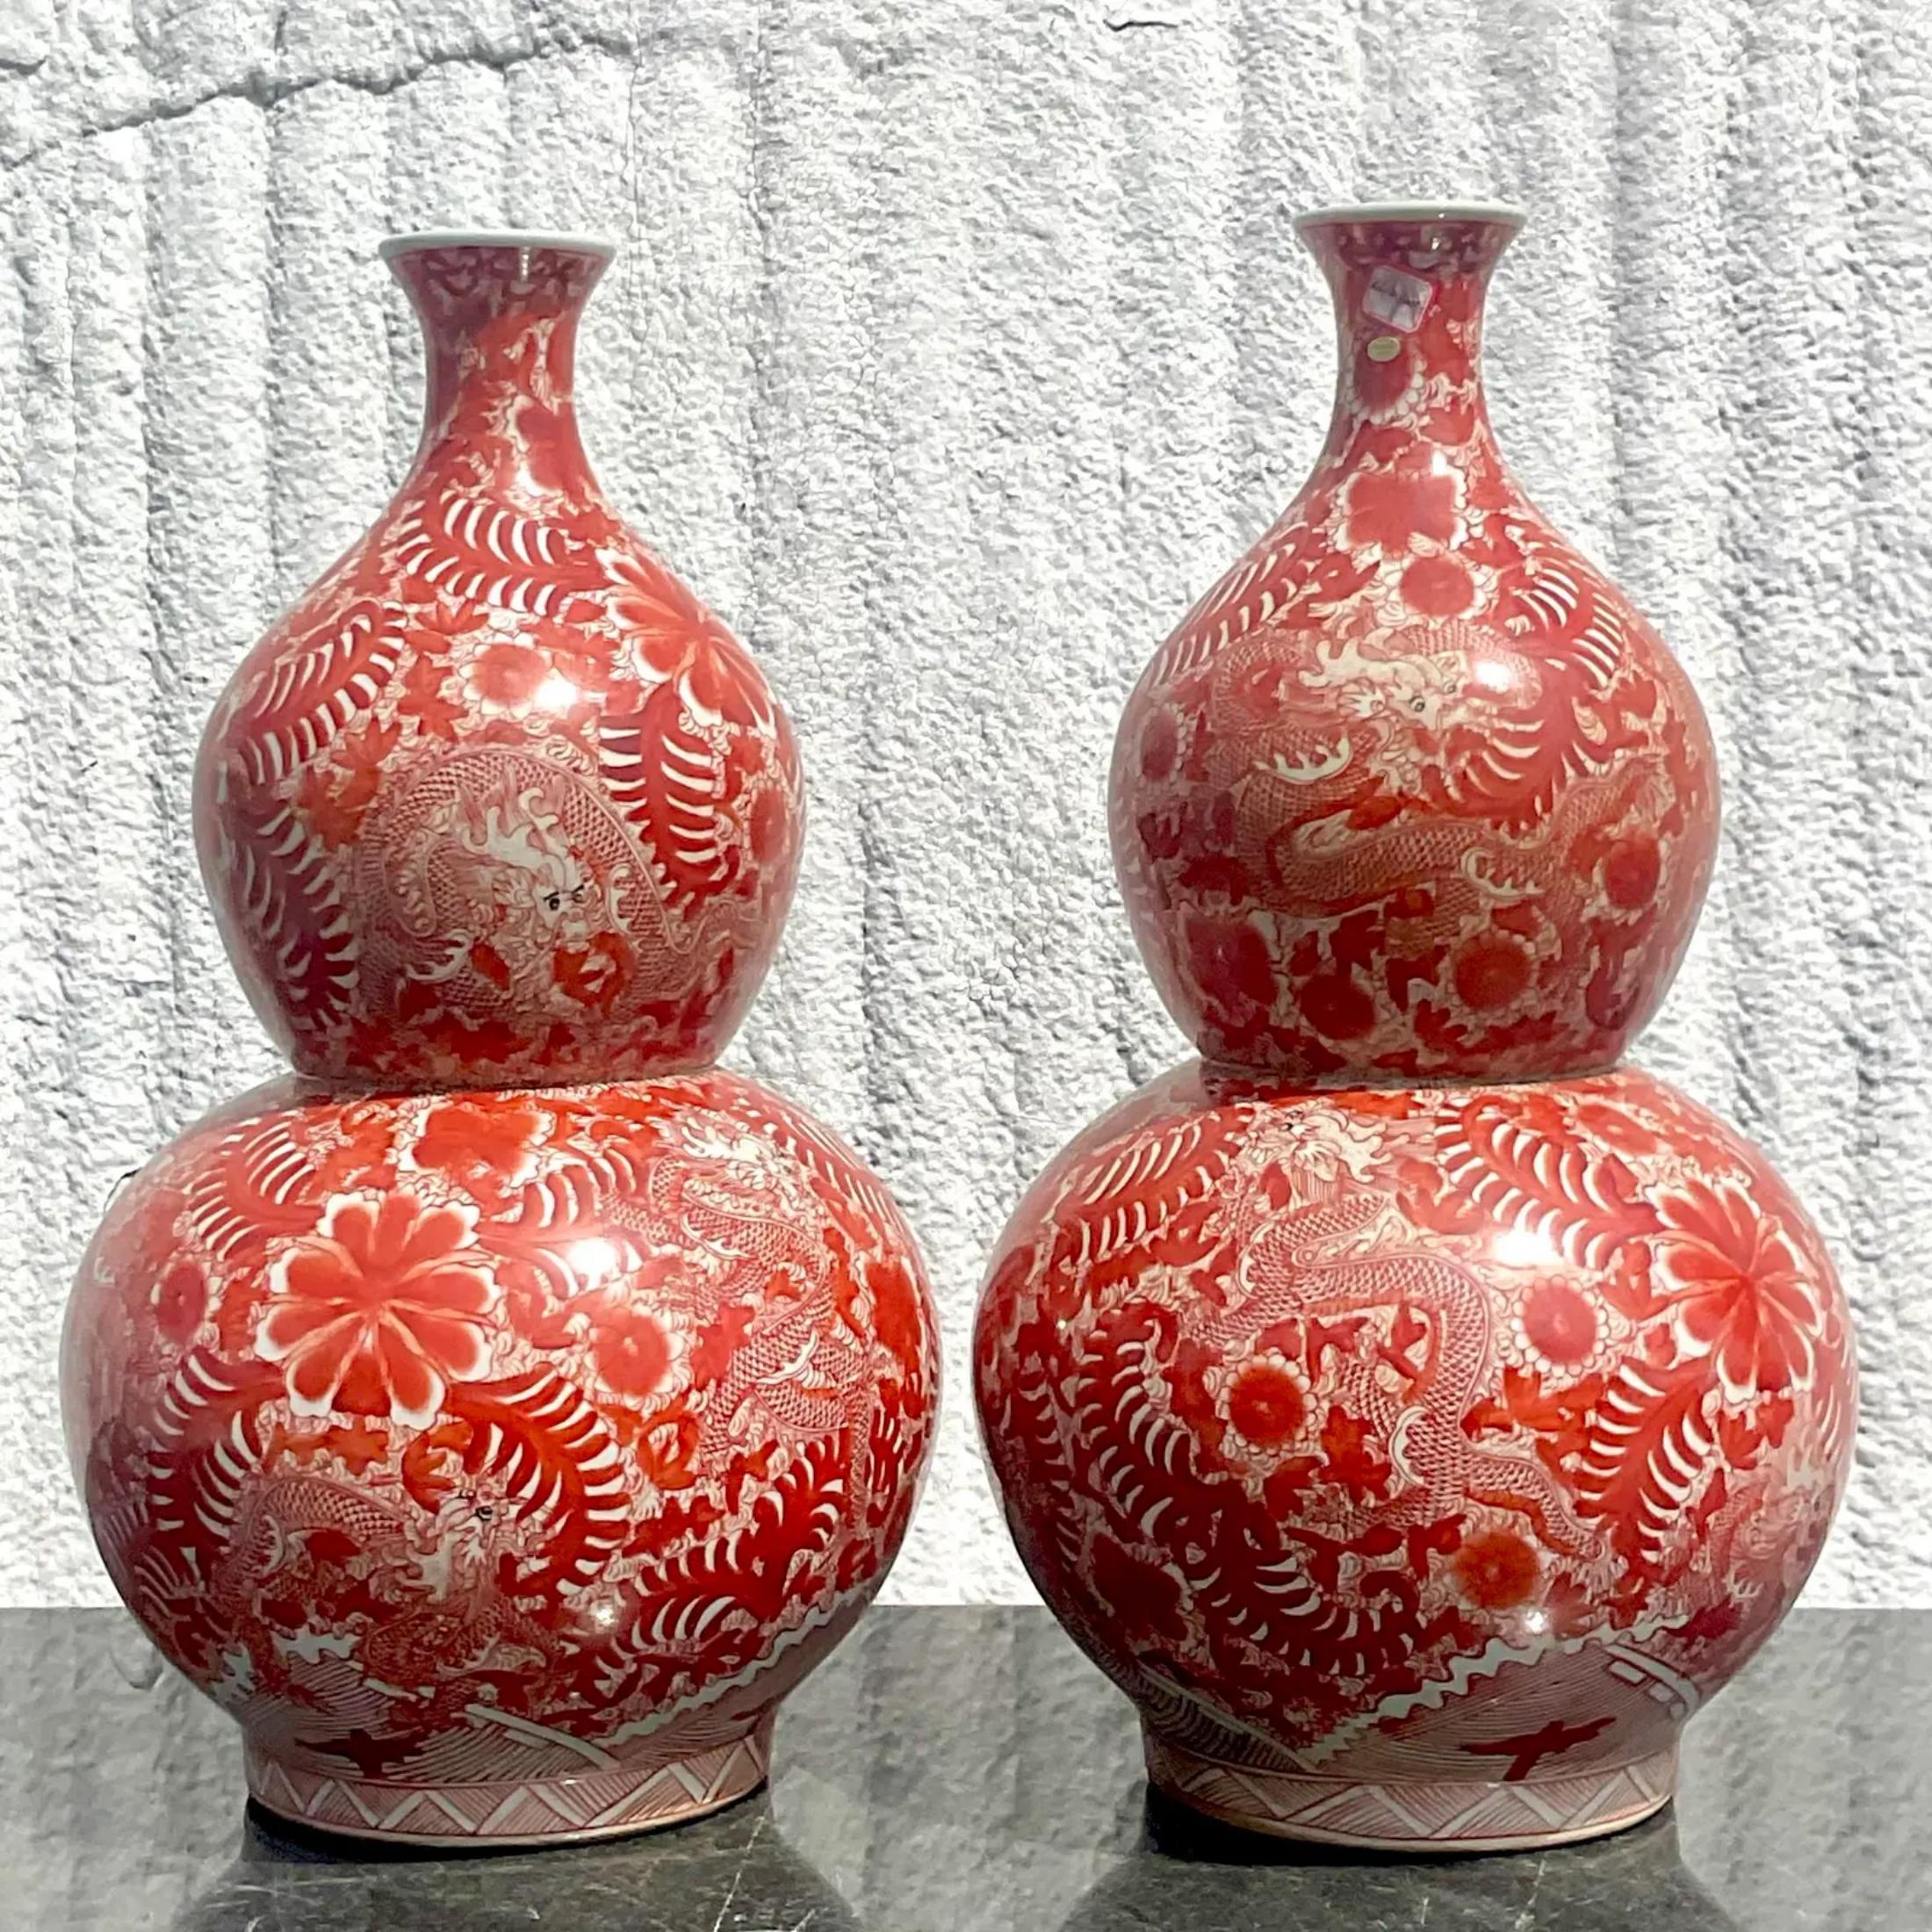 Ein Paar fabelhafte asiatische Vintage-Vasen. Dieses Paar asiatischer Vasen ist in einem schönen Rotton gehalten und zeigt erstaunliche Details von Drachen und Blumen. Es ist ein erstaunliches Stück, das jeden Raum bereichert. Erworben in einem